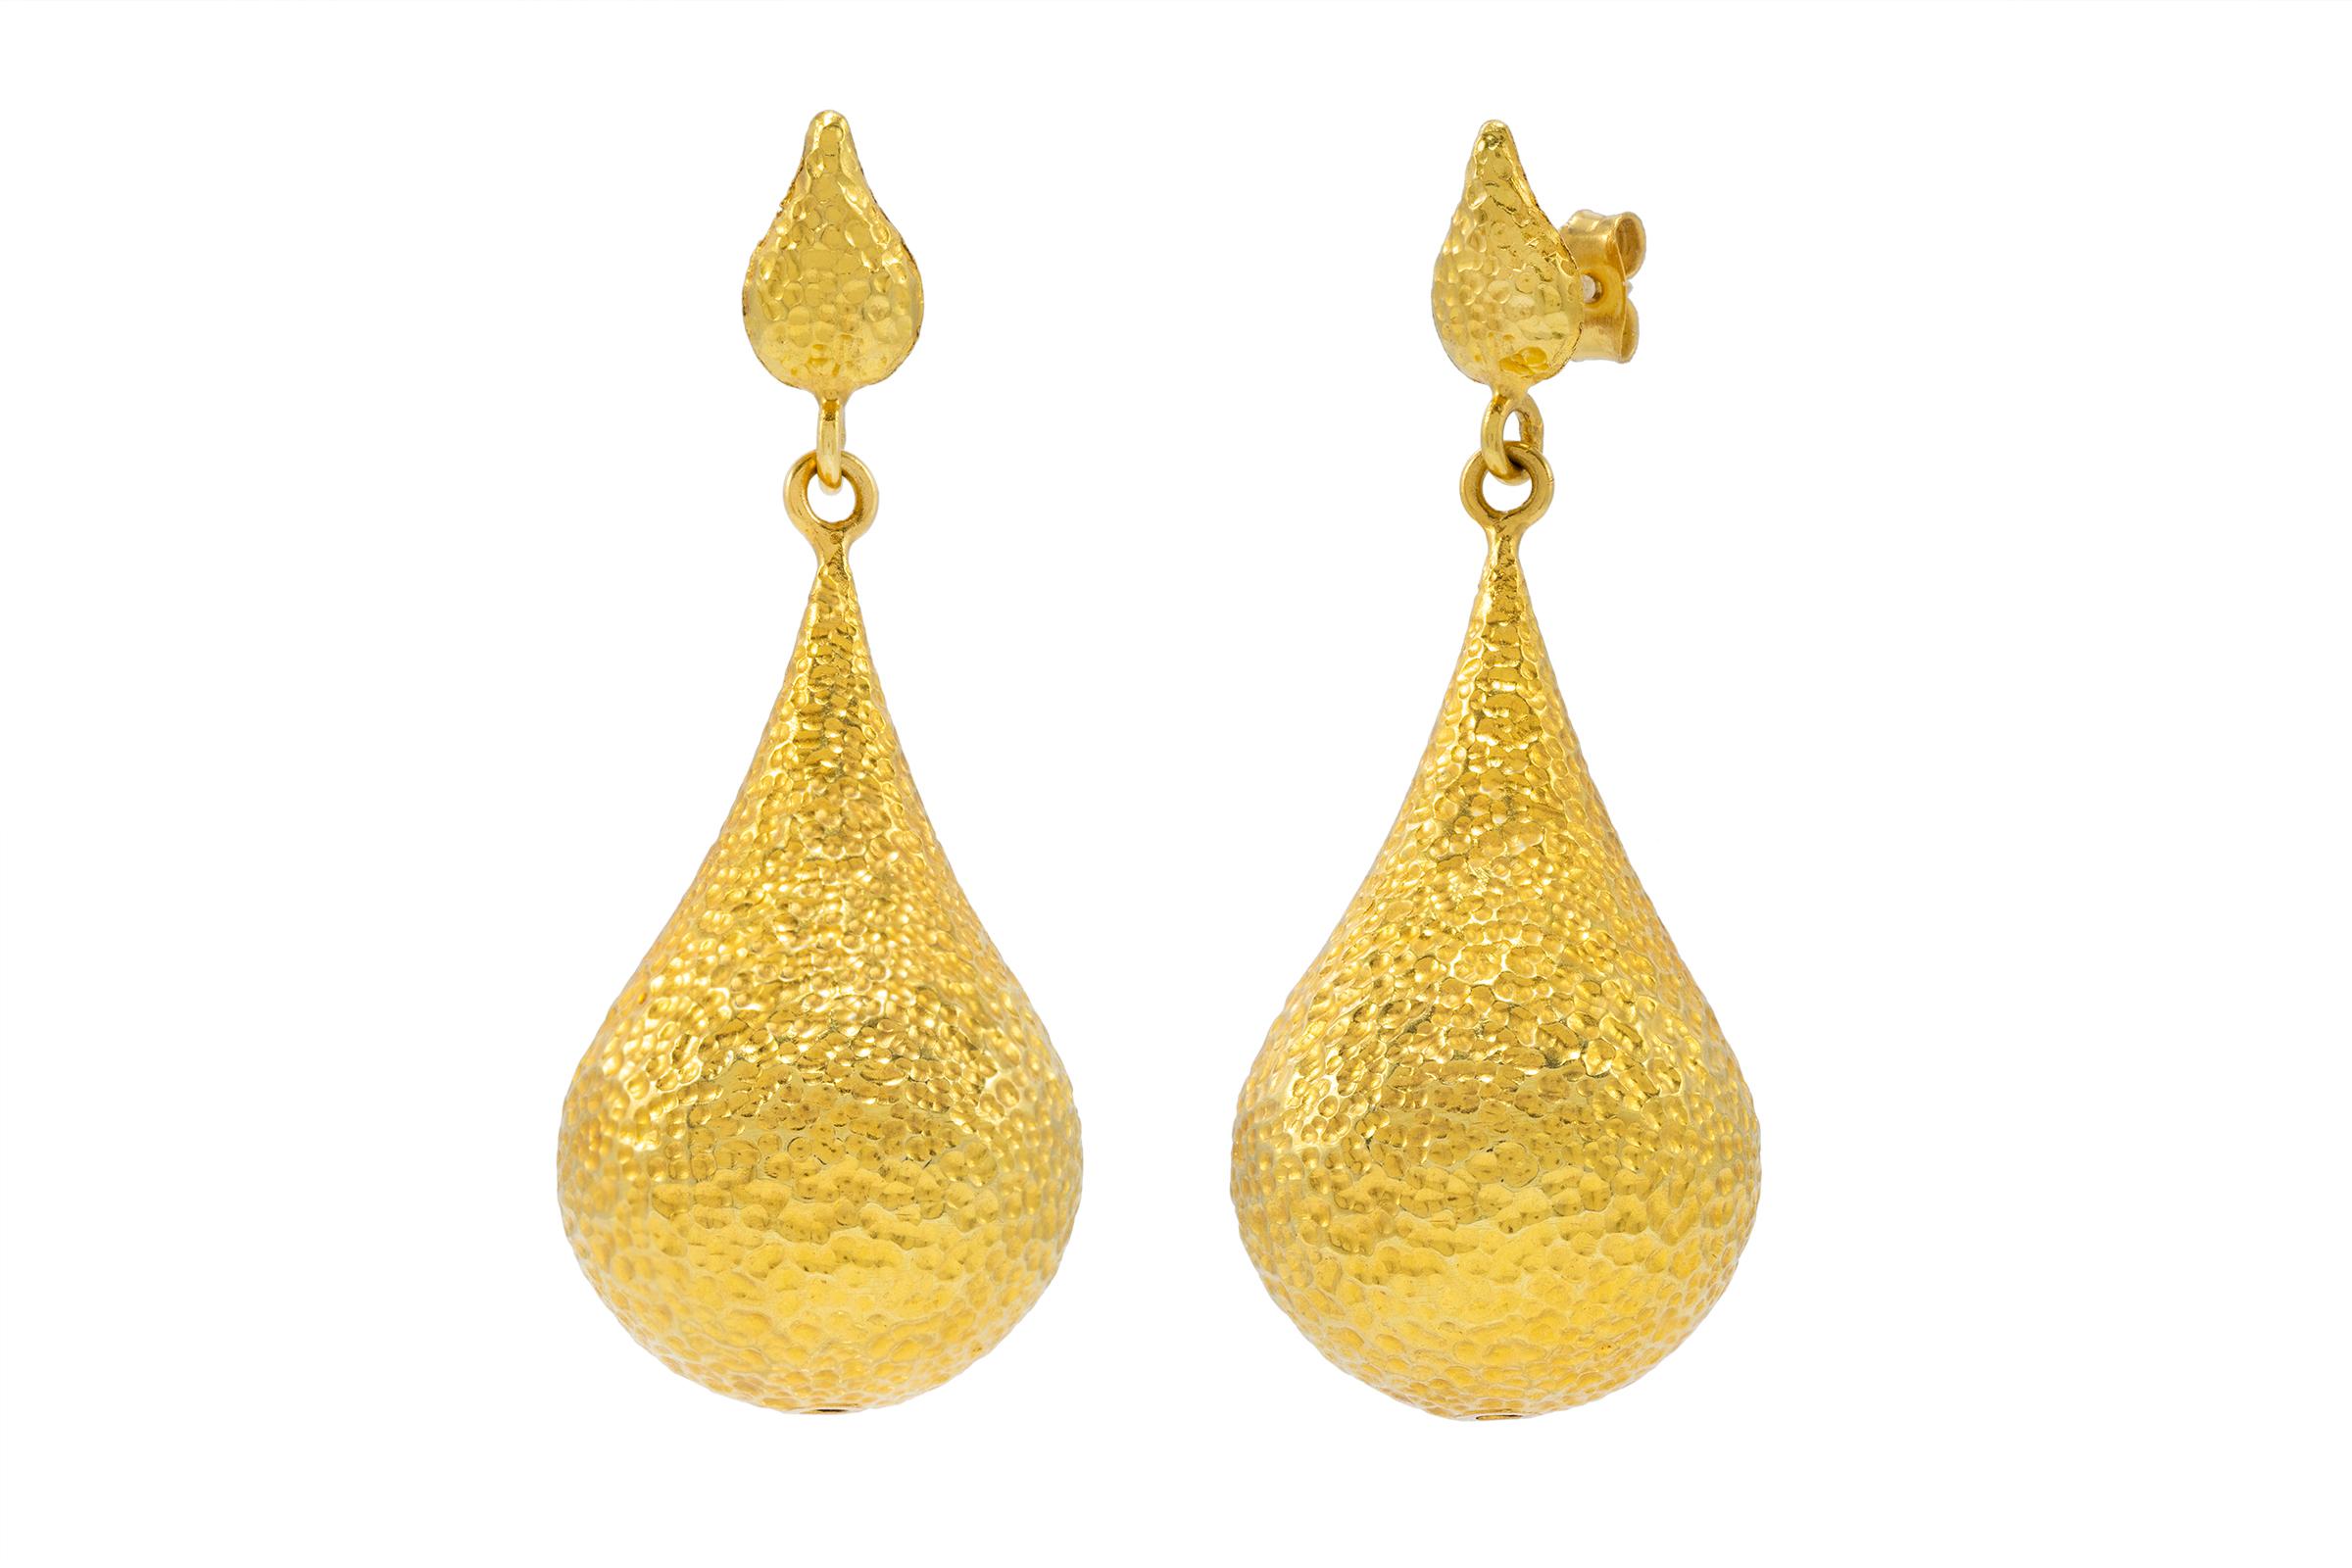 bali earrings gold